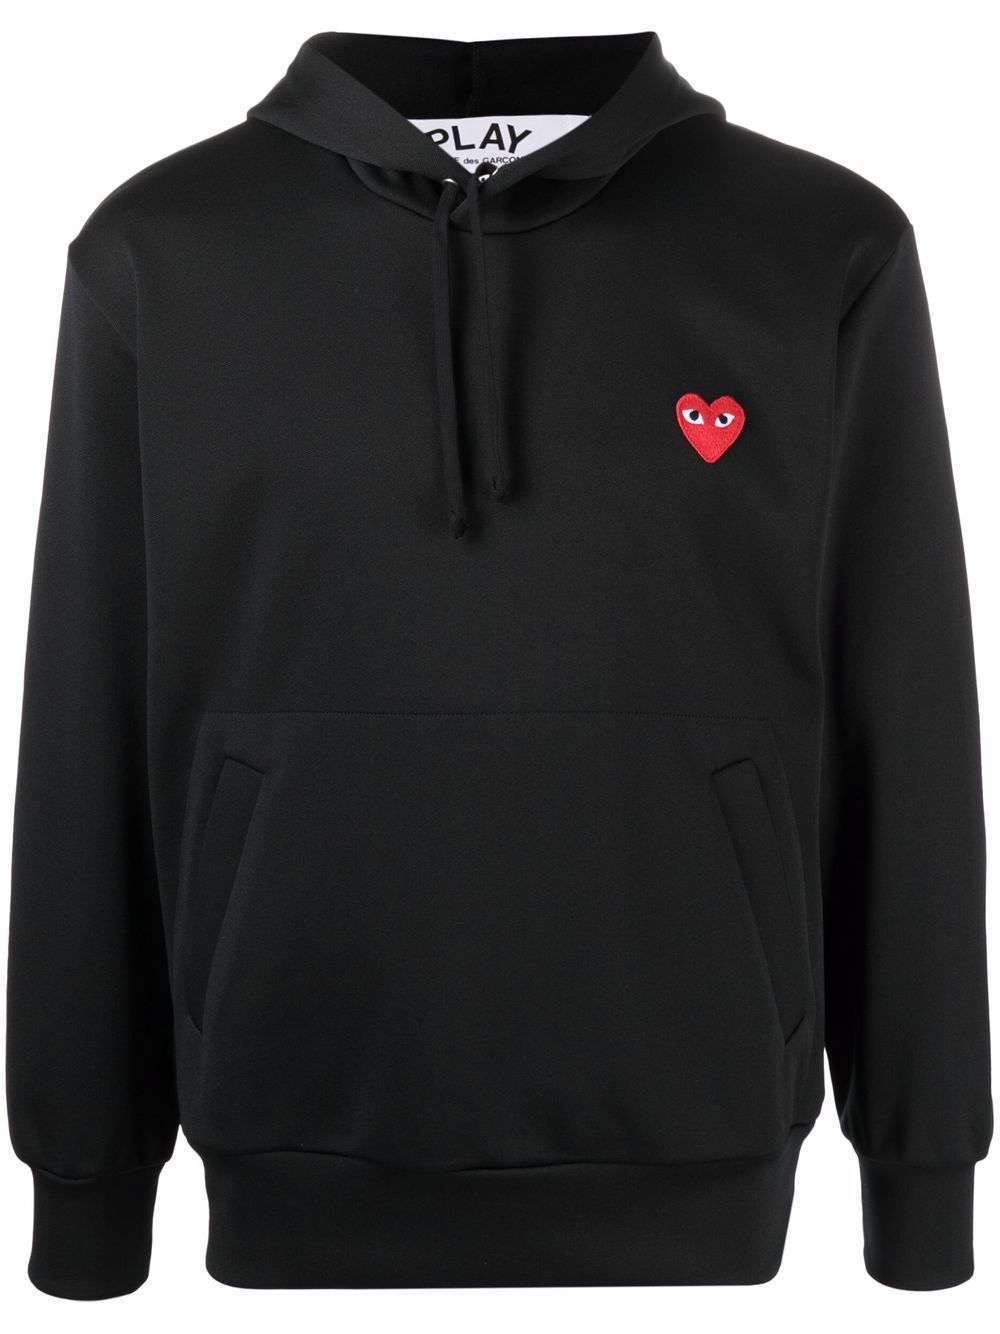 Jet-black heart-print pullover hoodie